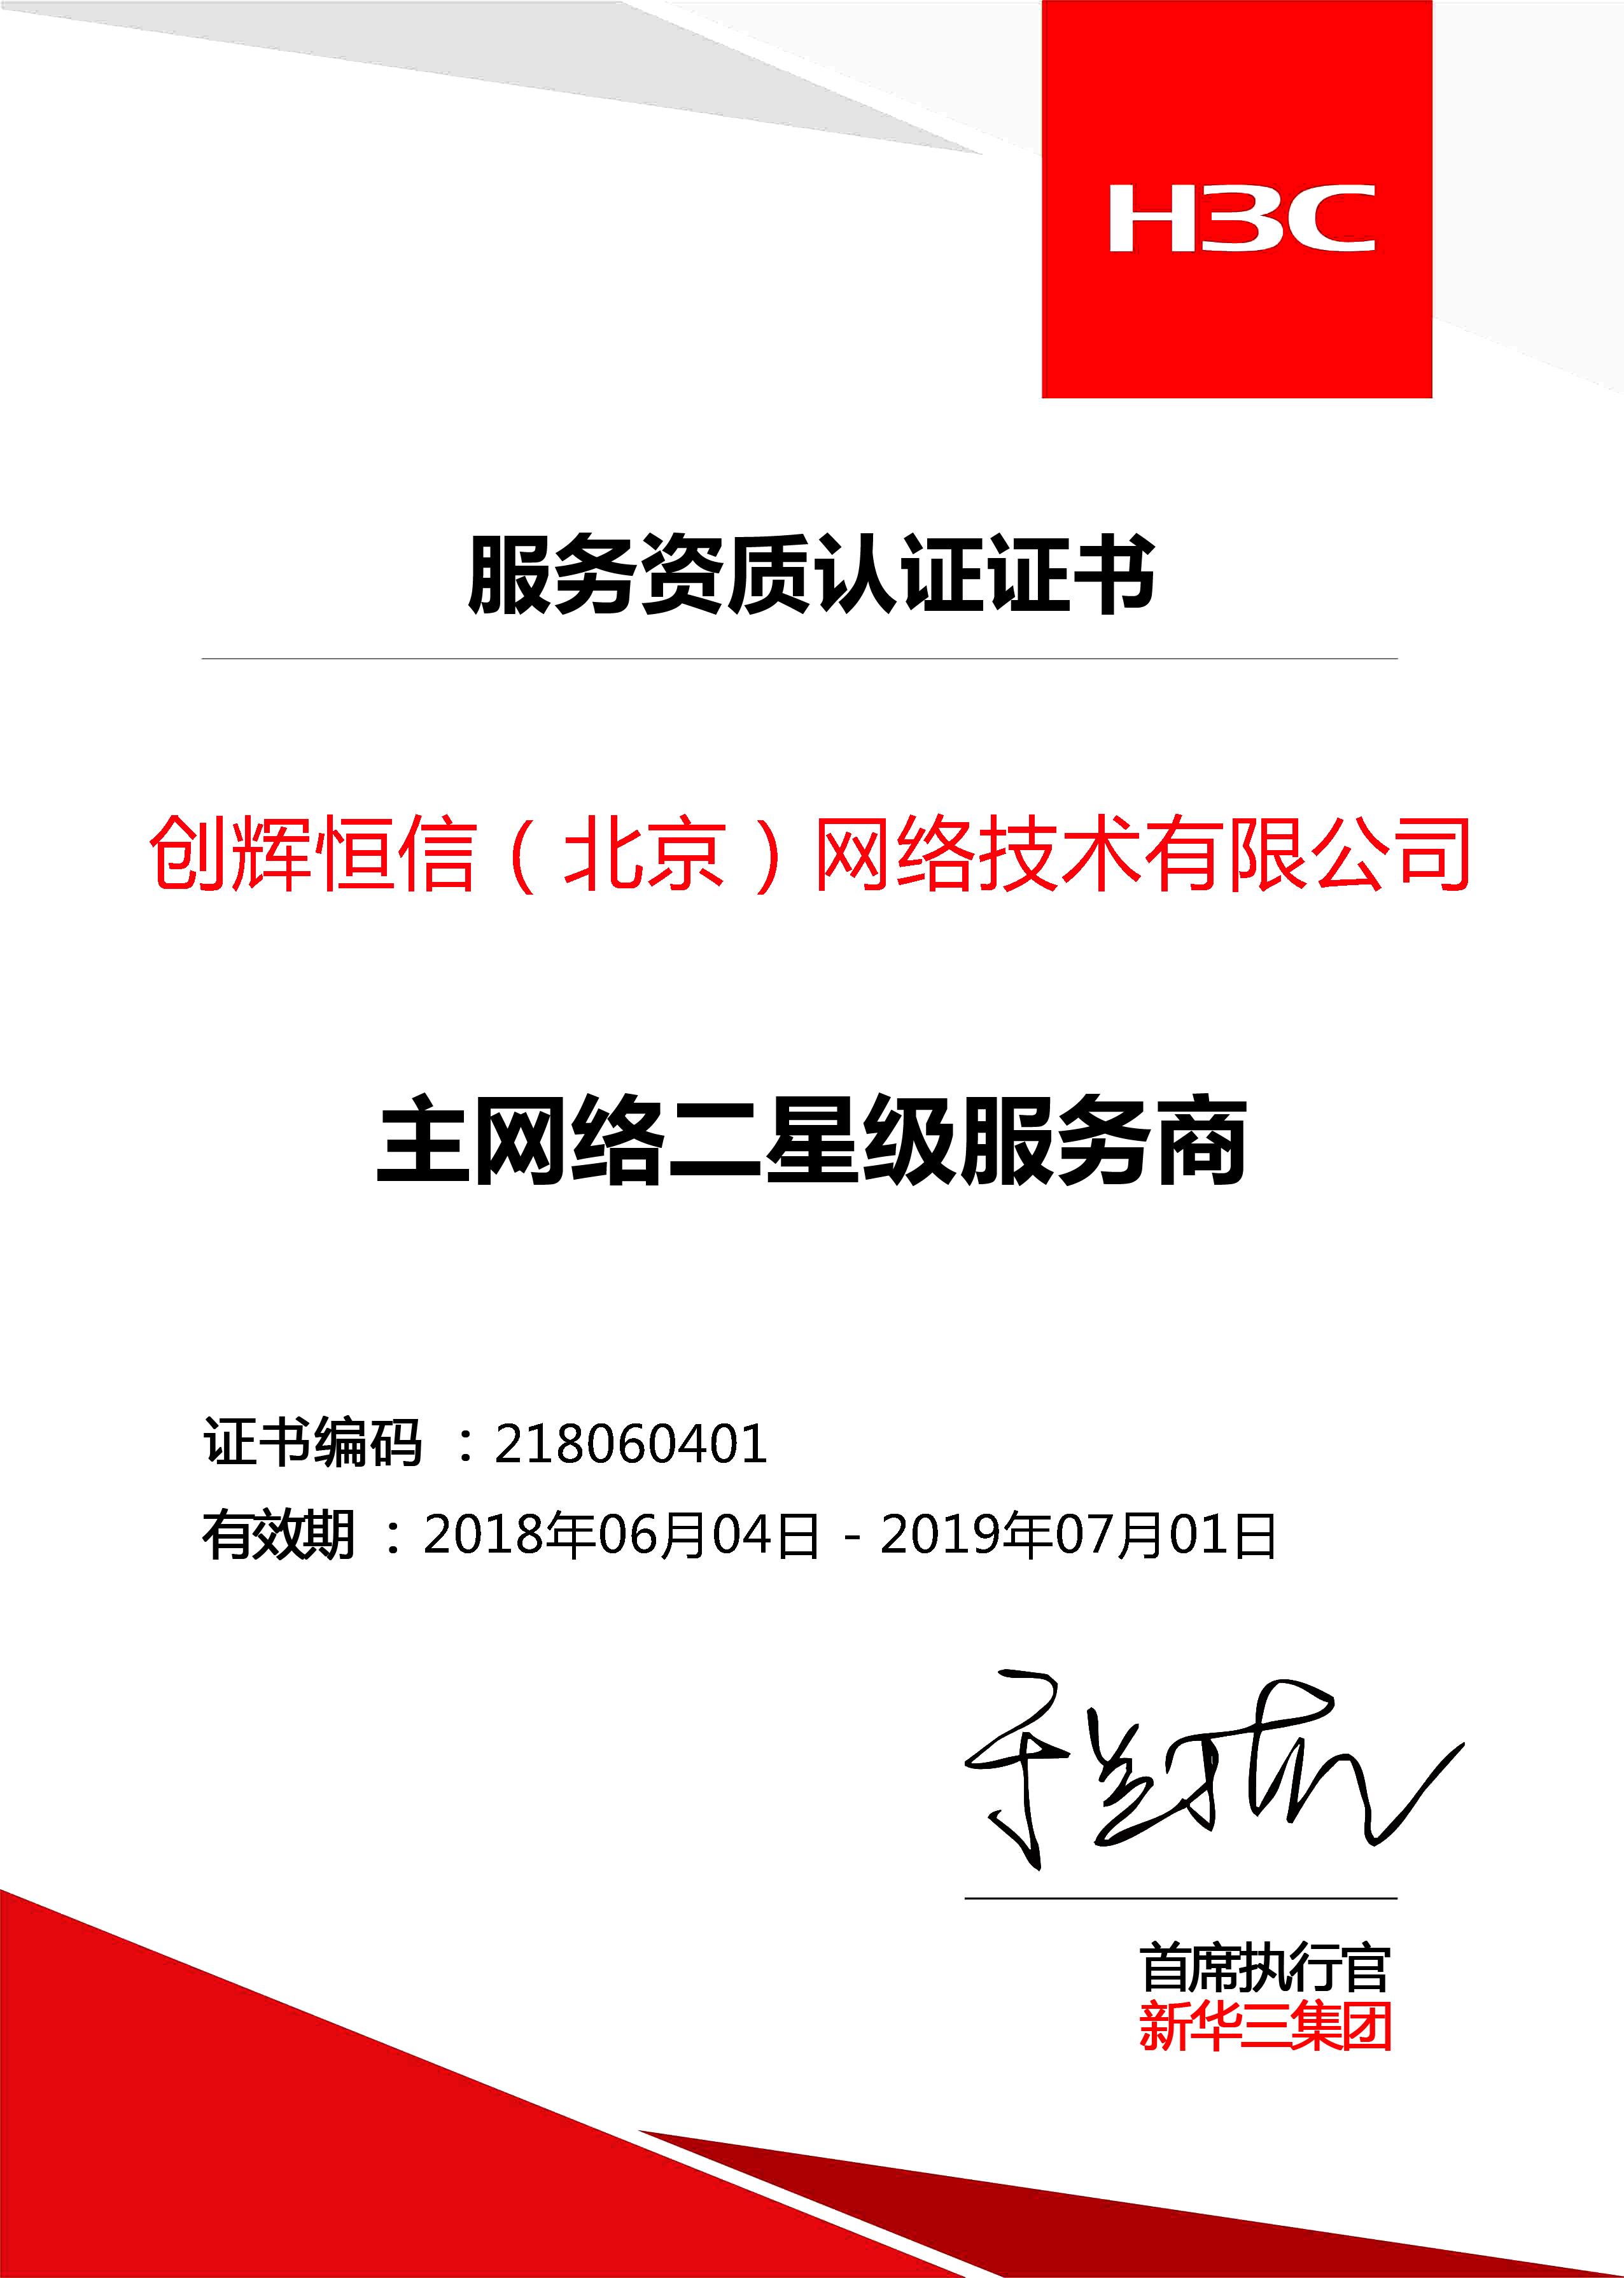 H3C二级服务商认证证书